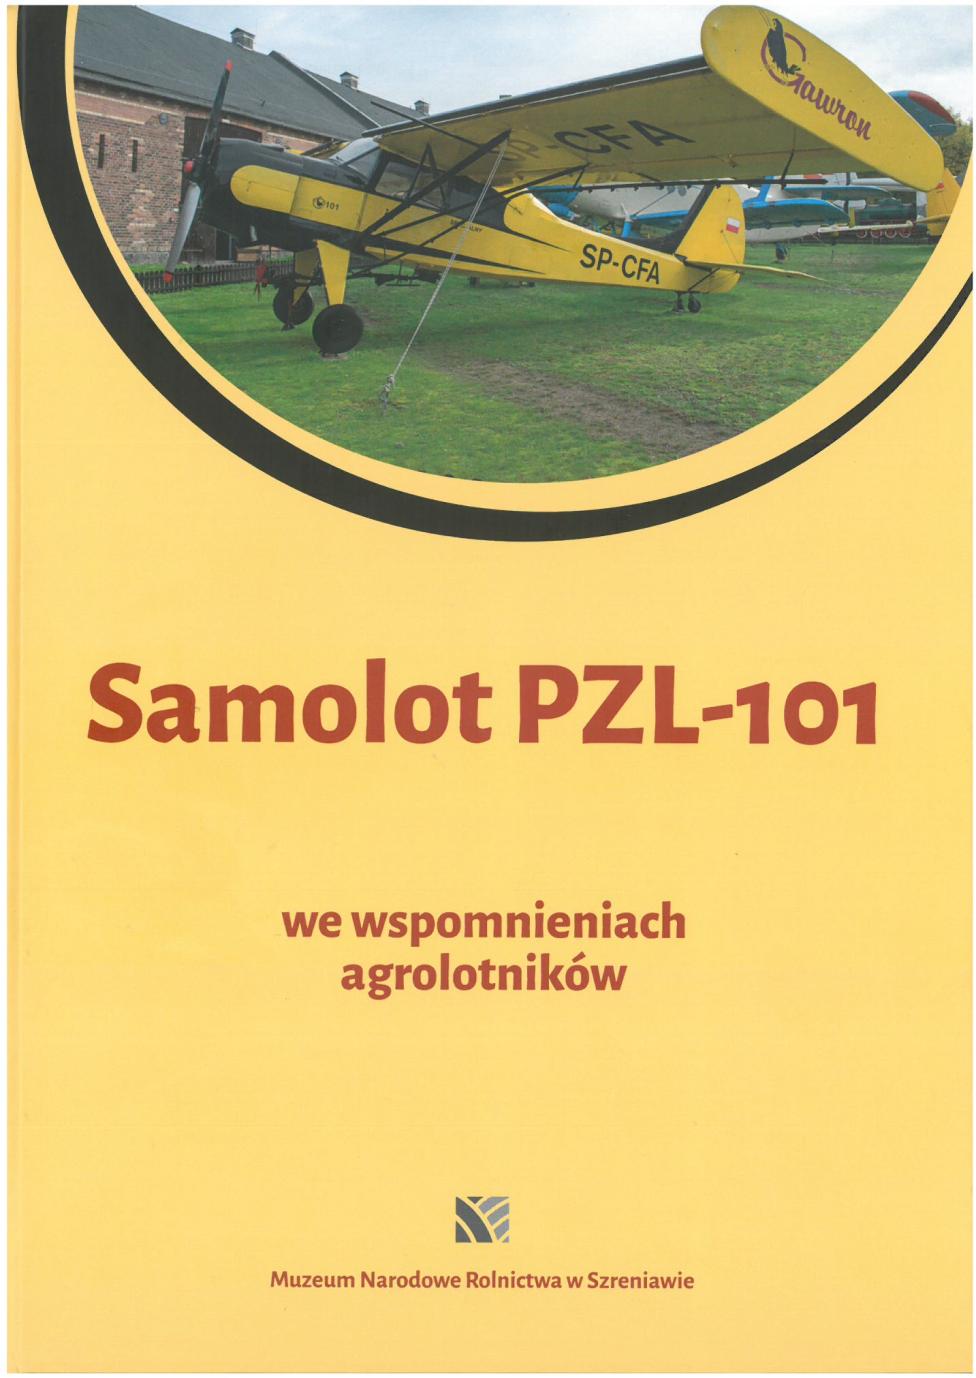 Książka "PZL-101 Gawron we wspomnieniach agrolotników" (fot. Muzeum Narodowe Rolnictwa w Szreniawie)